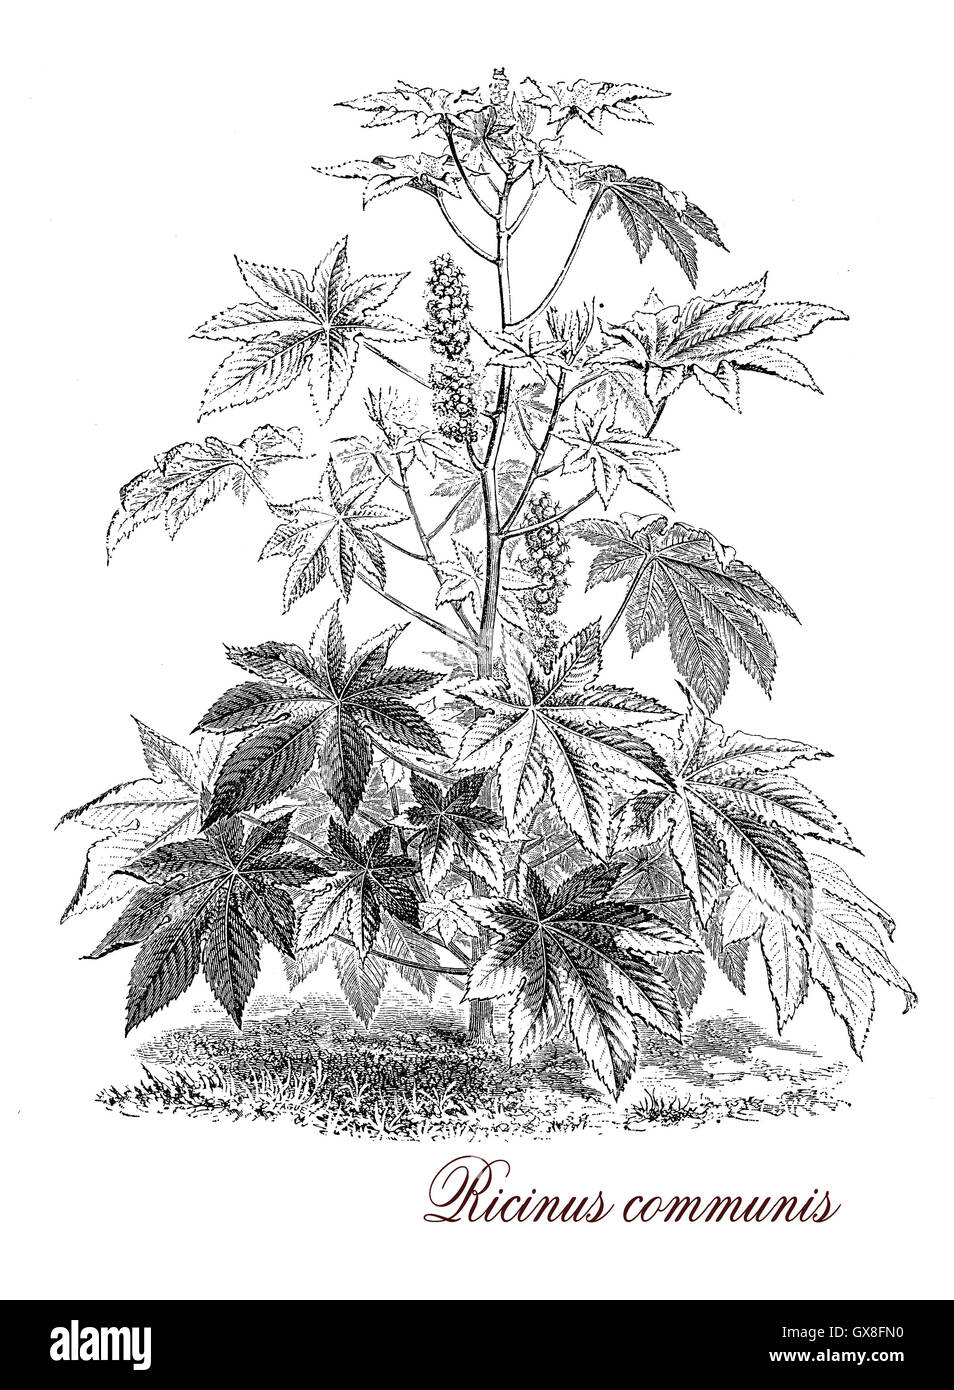 Vintage print beschreibt Ricinus Communis, blühende Pflanze bekannt auch als Castor-Öl-Pflanze, aus den Samen ist produziert Rizinusöl als motor Schmierstoff und in Medizin und Ricin, ein wasserlöslicher Giftstoff. Stockfoto